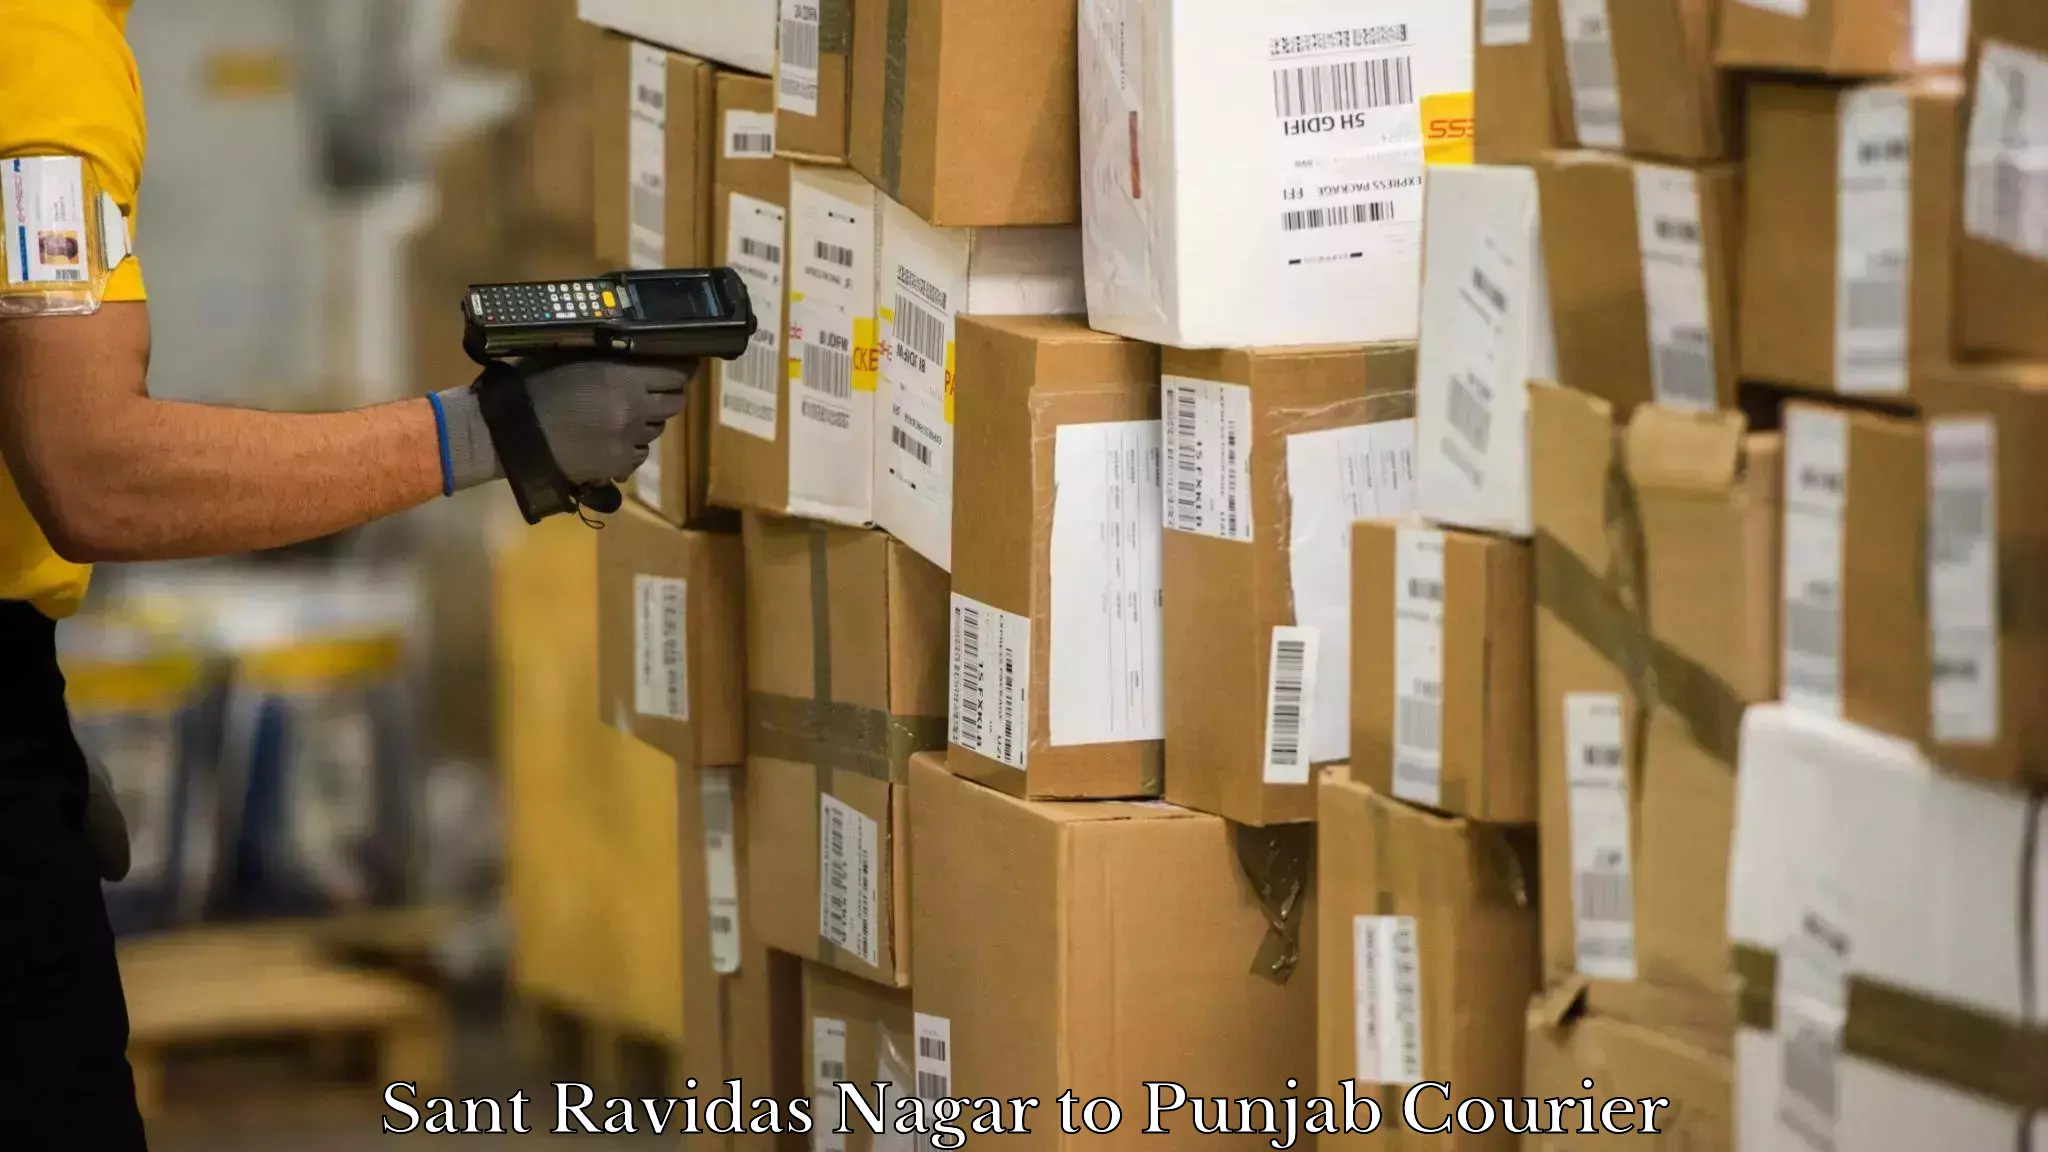 Discount courier rates Sant Ravidas Nagar to Punjab